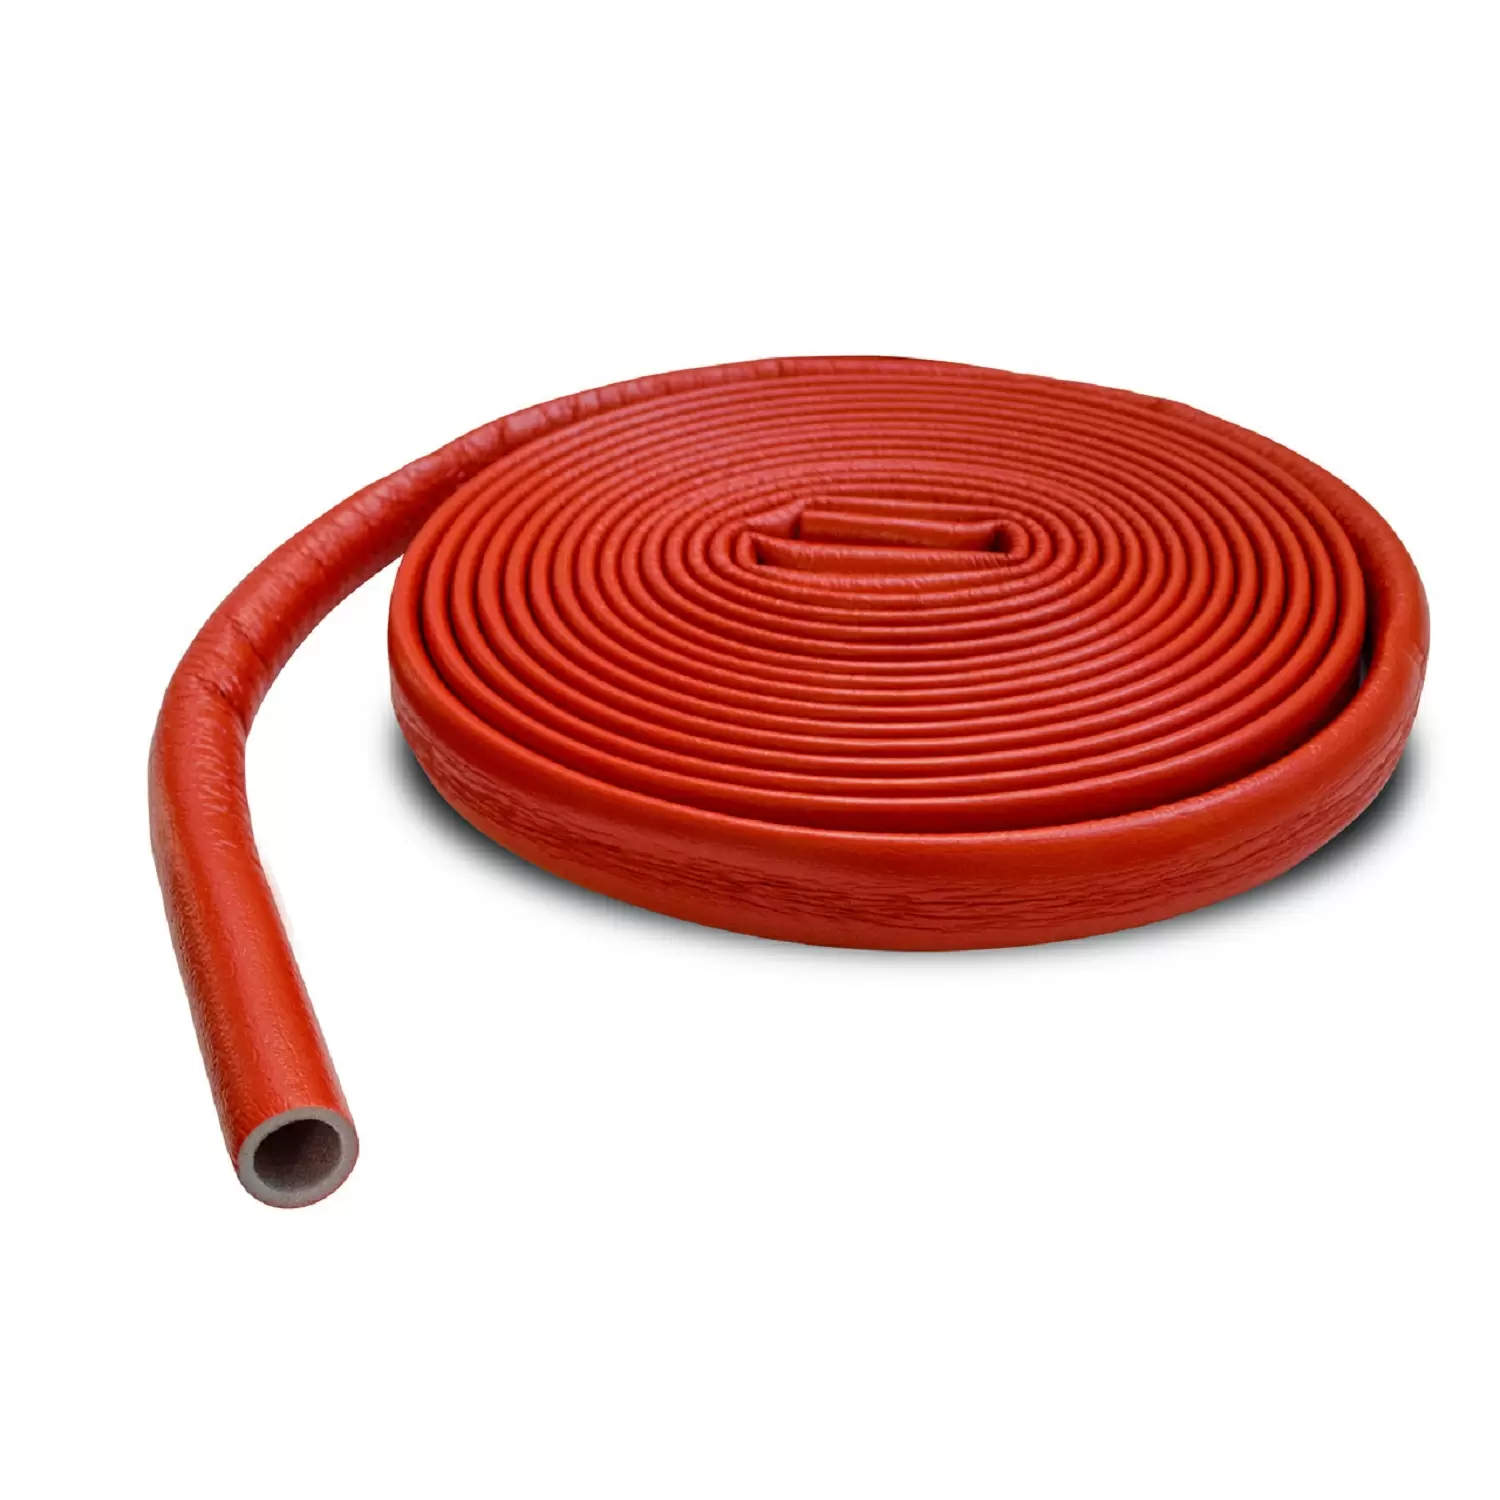 Теплоизоляция Энергофлекс супер протект 35/4 для труб диаметром 32 мм красная, бухта 11 м